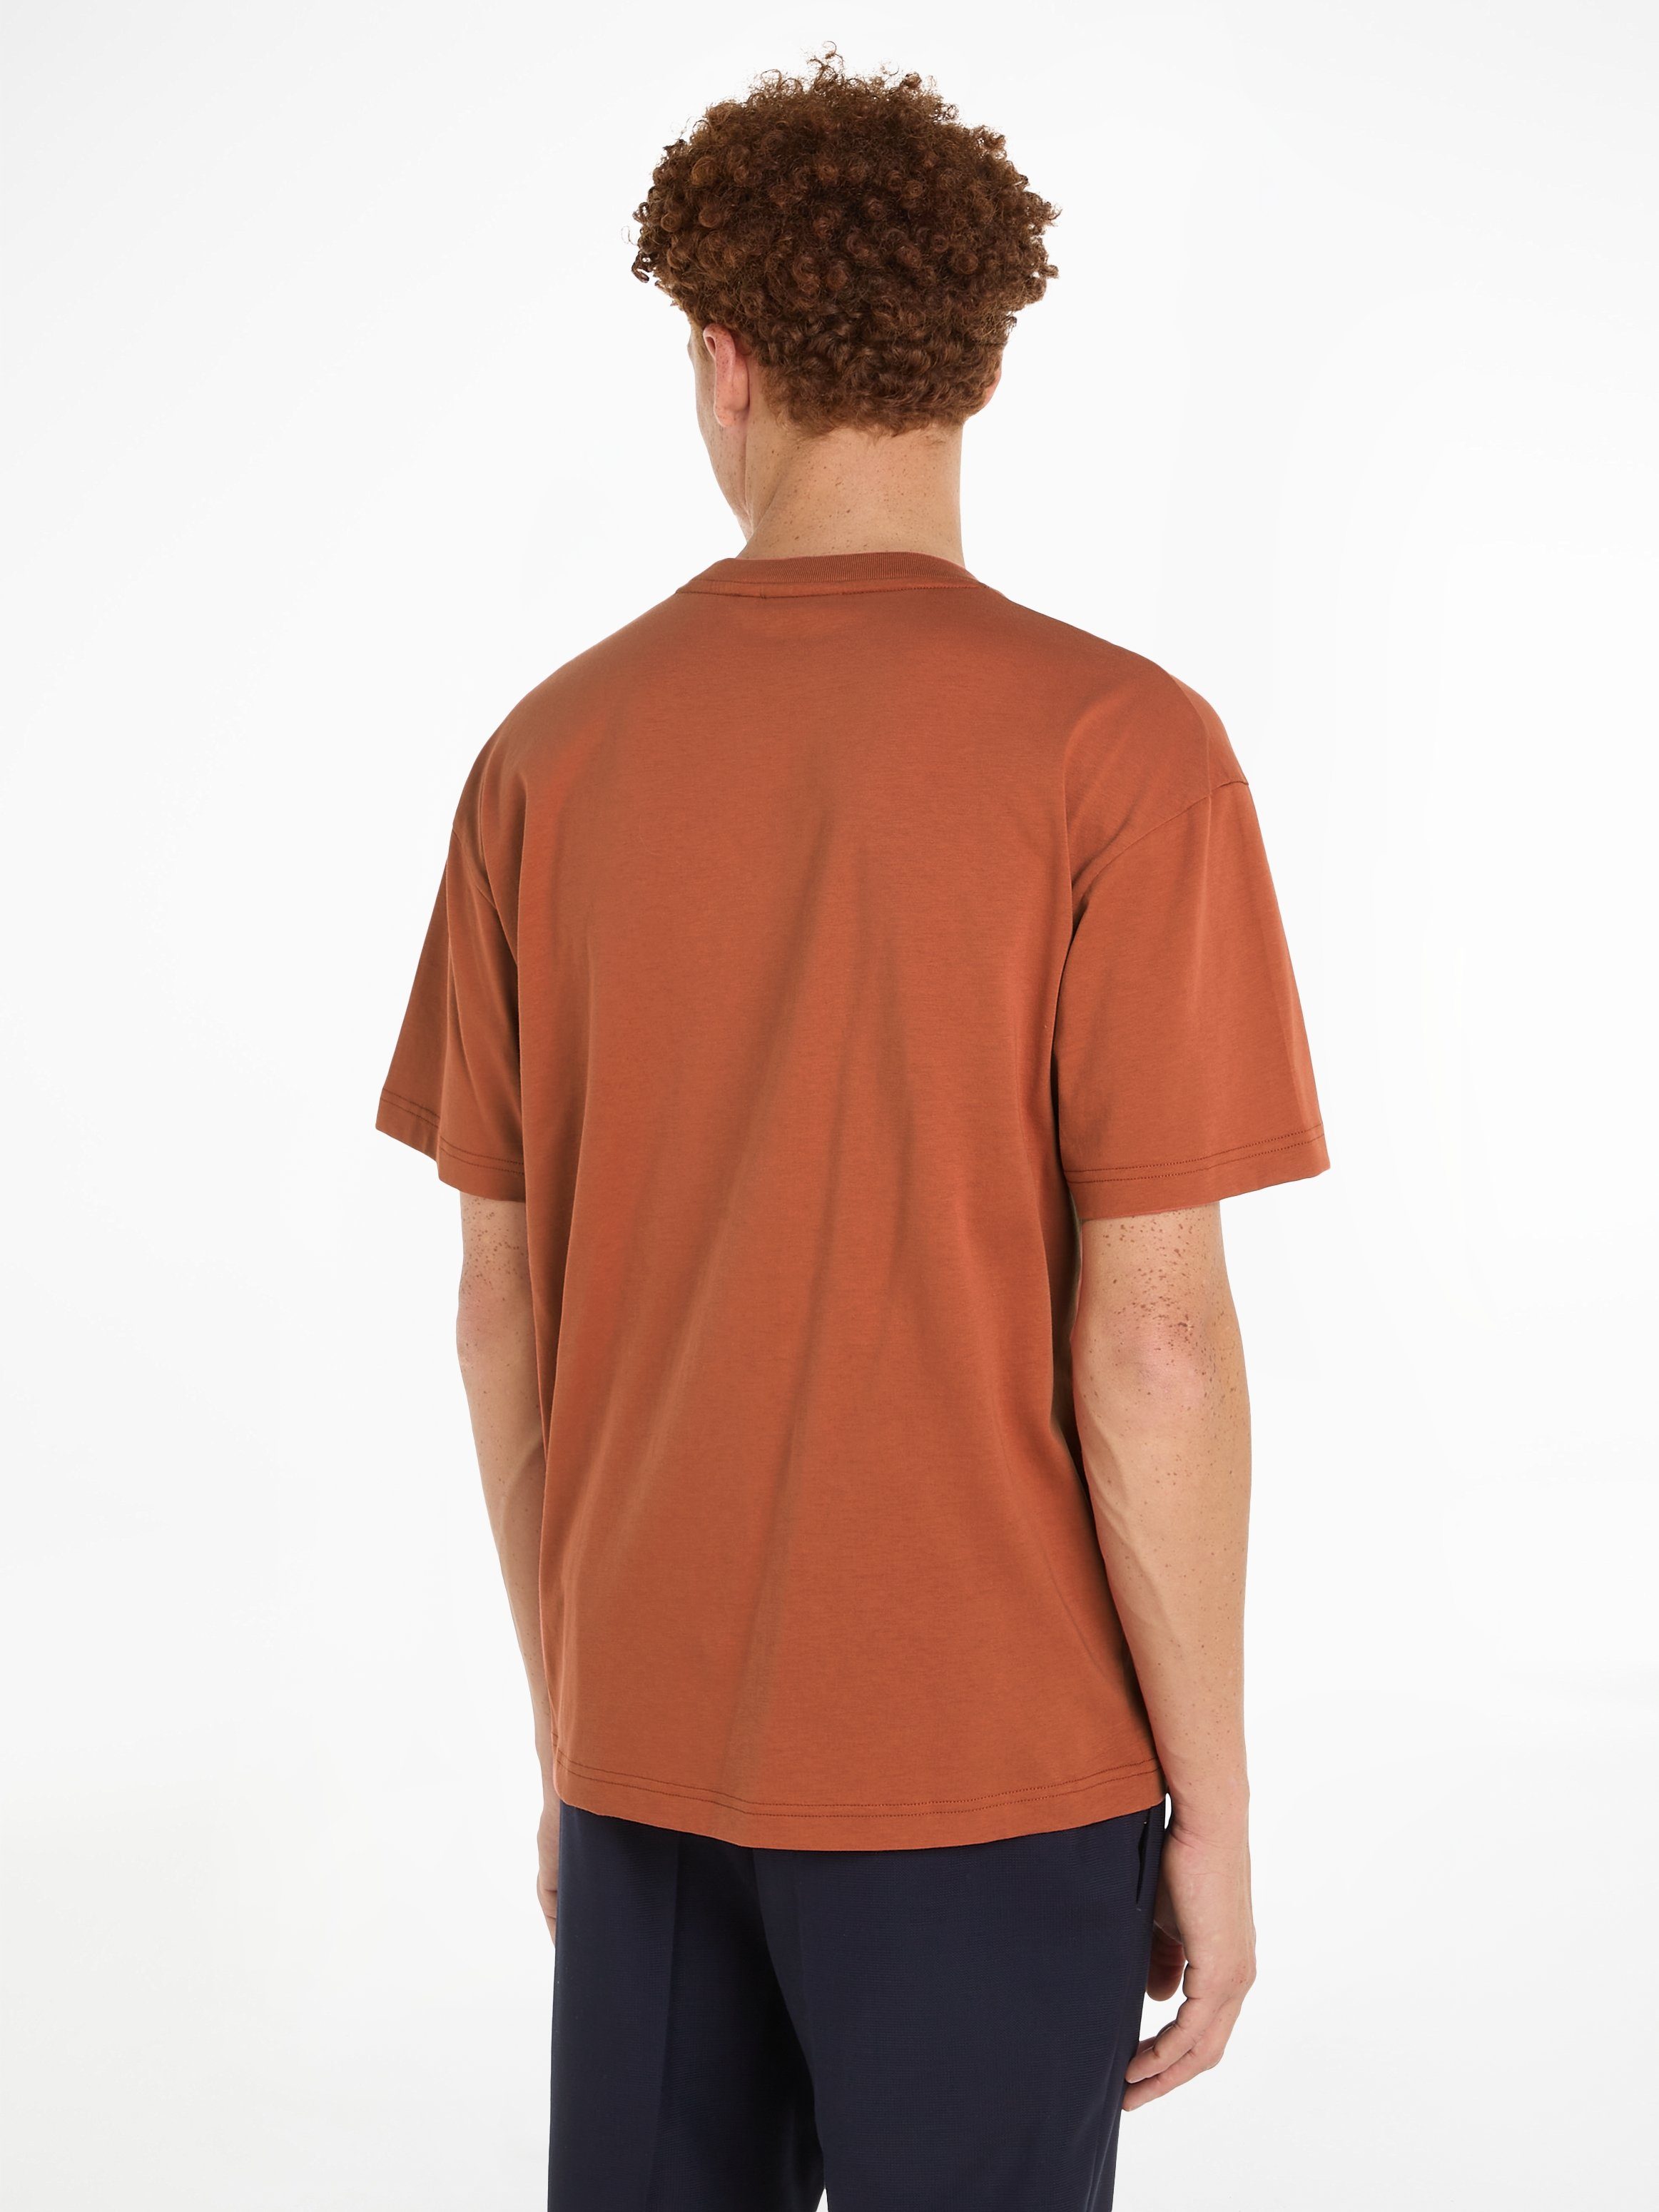 Calvin Klein T-Shirt HERO LOGO COMFORT Markenlabel T-SHIRT Sun Copper aufgedrucktem mit